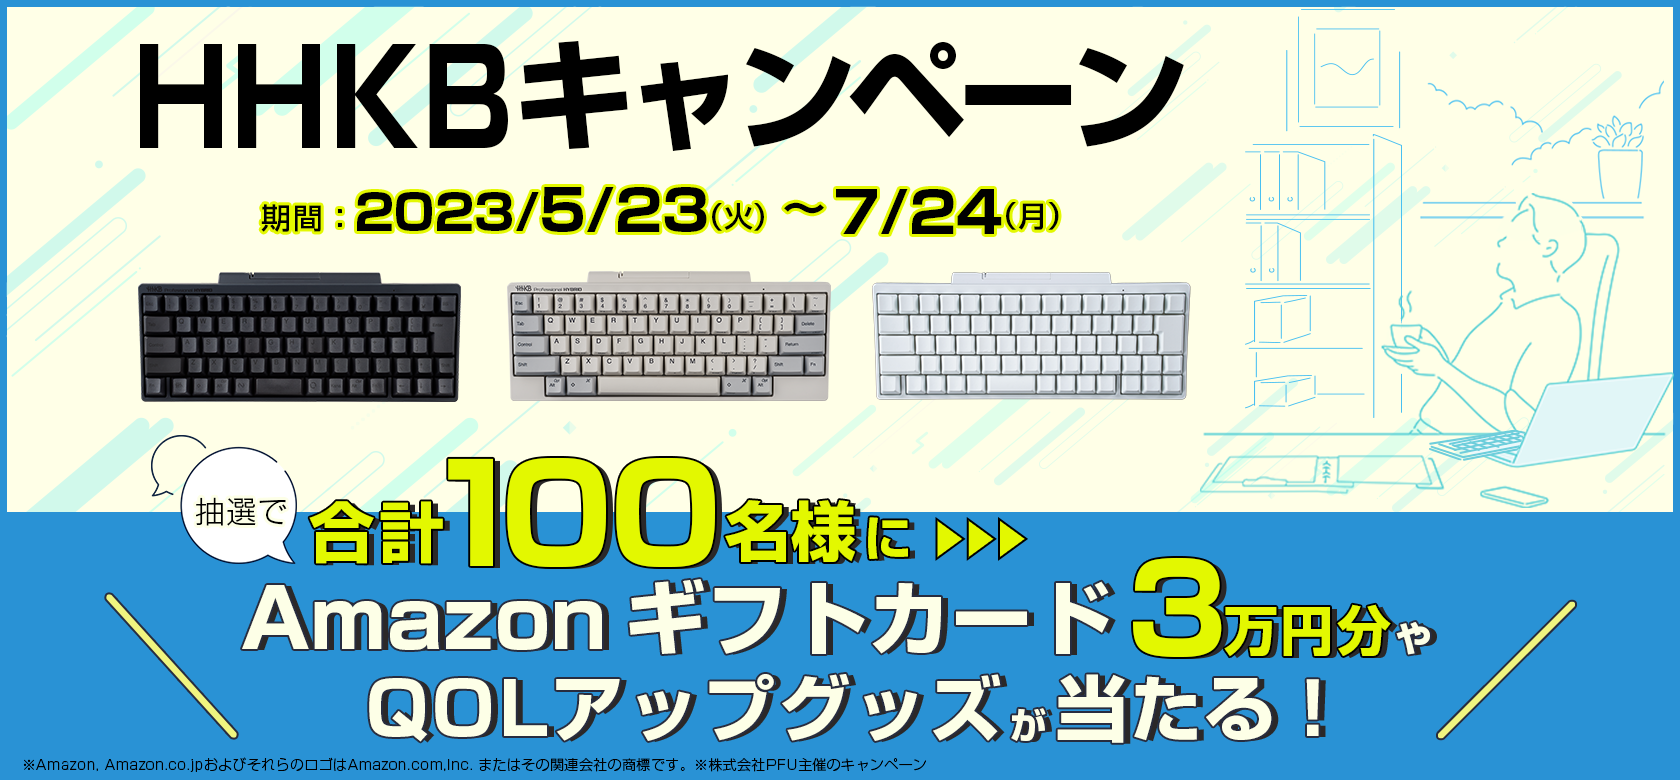 HHKB購入でAmazonギフトカード3万円分が当たるキャンペーン - PC Watch